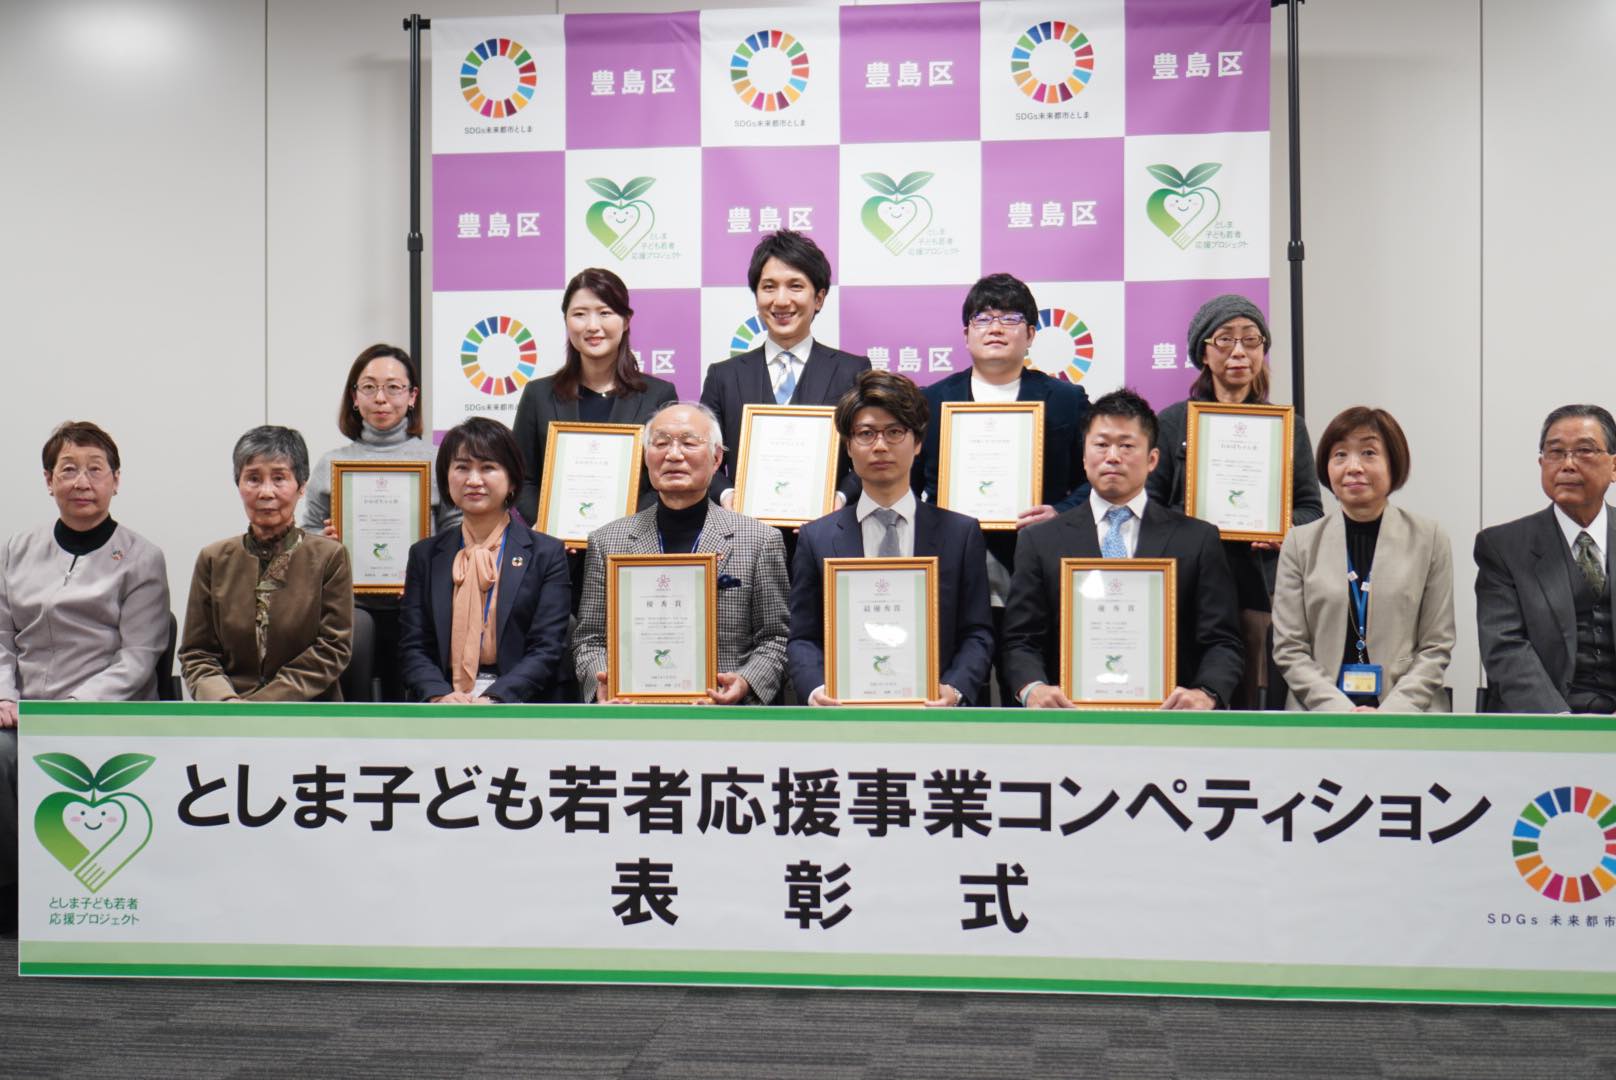 【受賞】東京都豊島区「としま子ども若者応援事業コンペティション」において特別賞を受賞